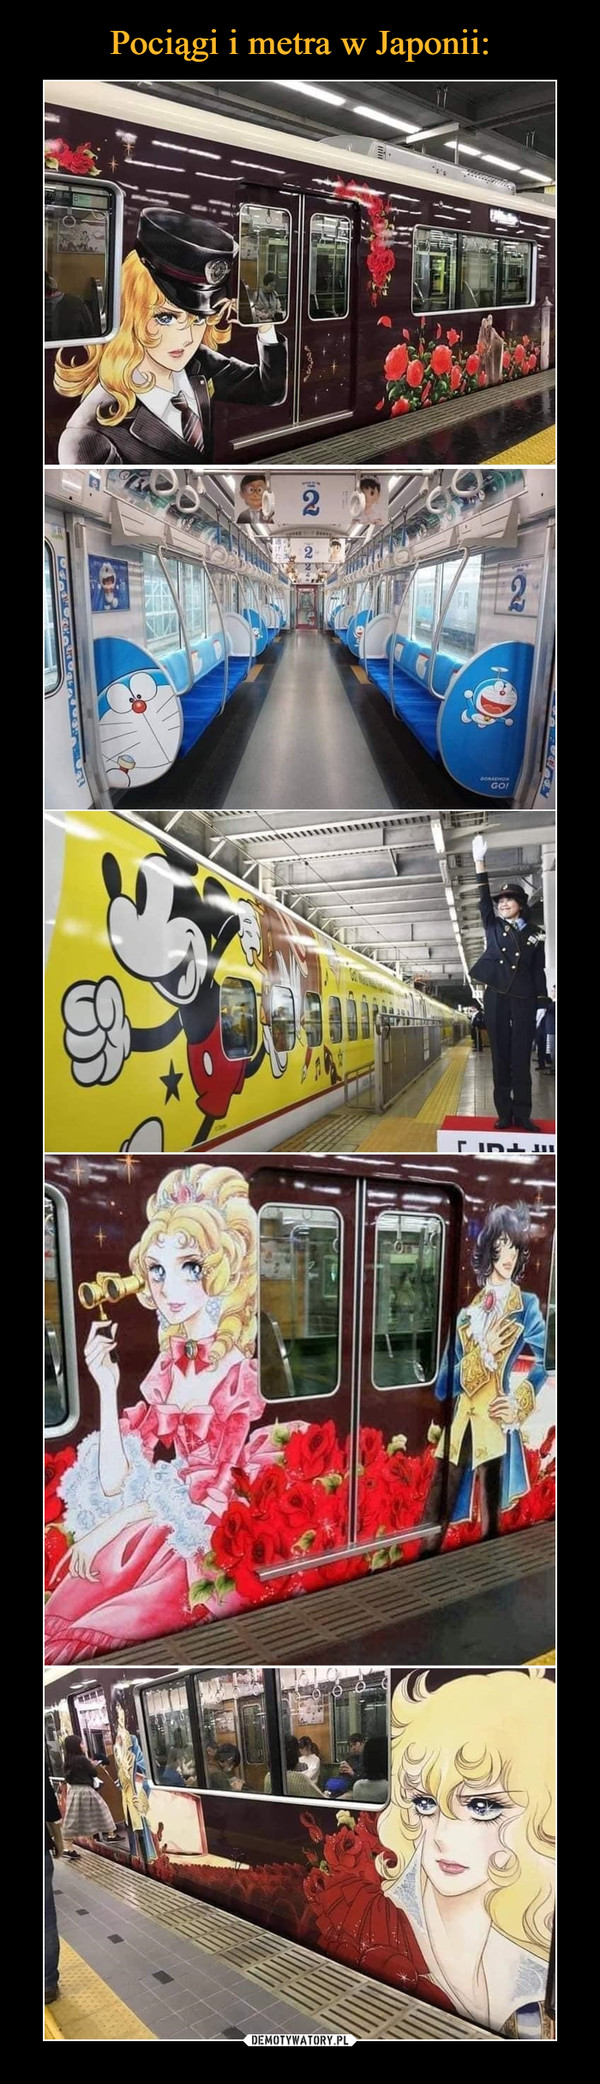 Pociągi i metra w Japonii: